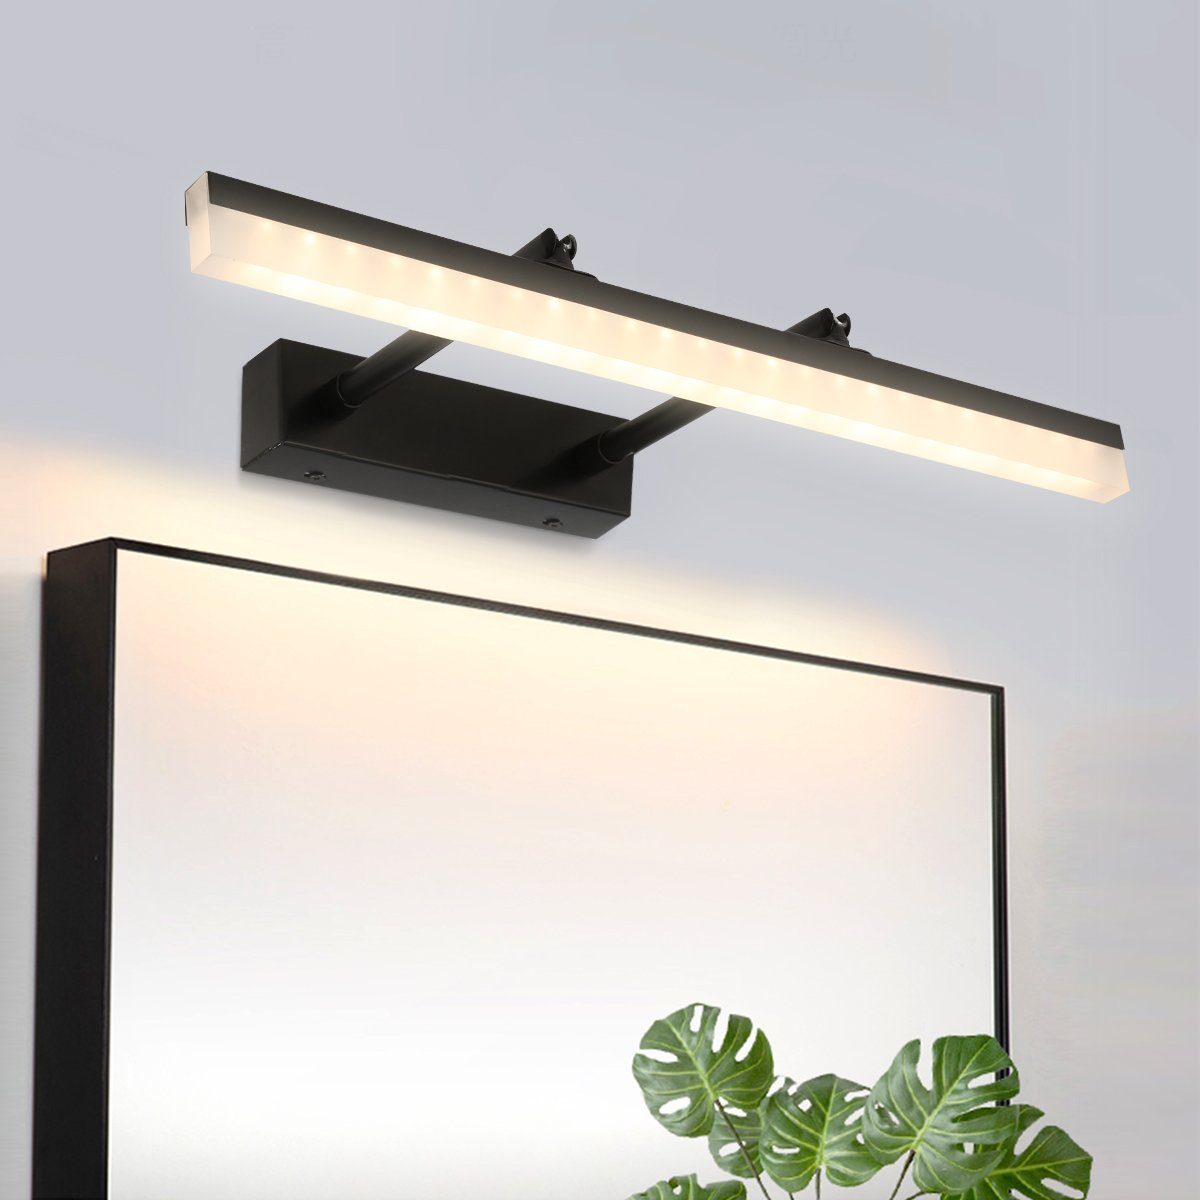 LETGOSPT LED Spiegelleuchte 9W LED Spiegellampe 40cm, 180° Einstellbar LED Schminklicht Edelstahl, LED fest integriert, Kaltweiß/Naturweiß/Warmweiß, LED Beleuchtung Spiegellampe Schranklampe Aufbauleuchte Wandleuchte